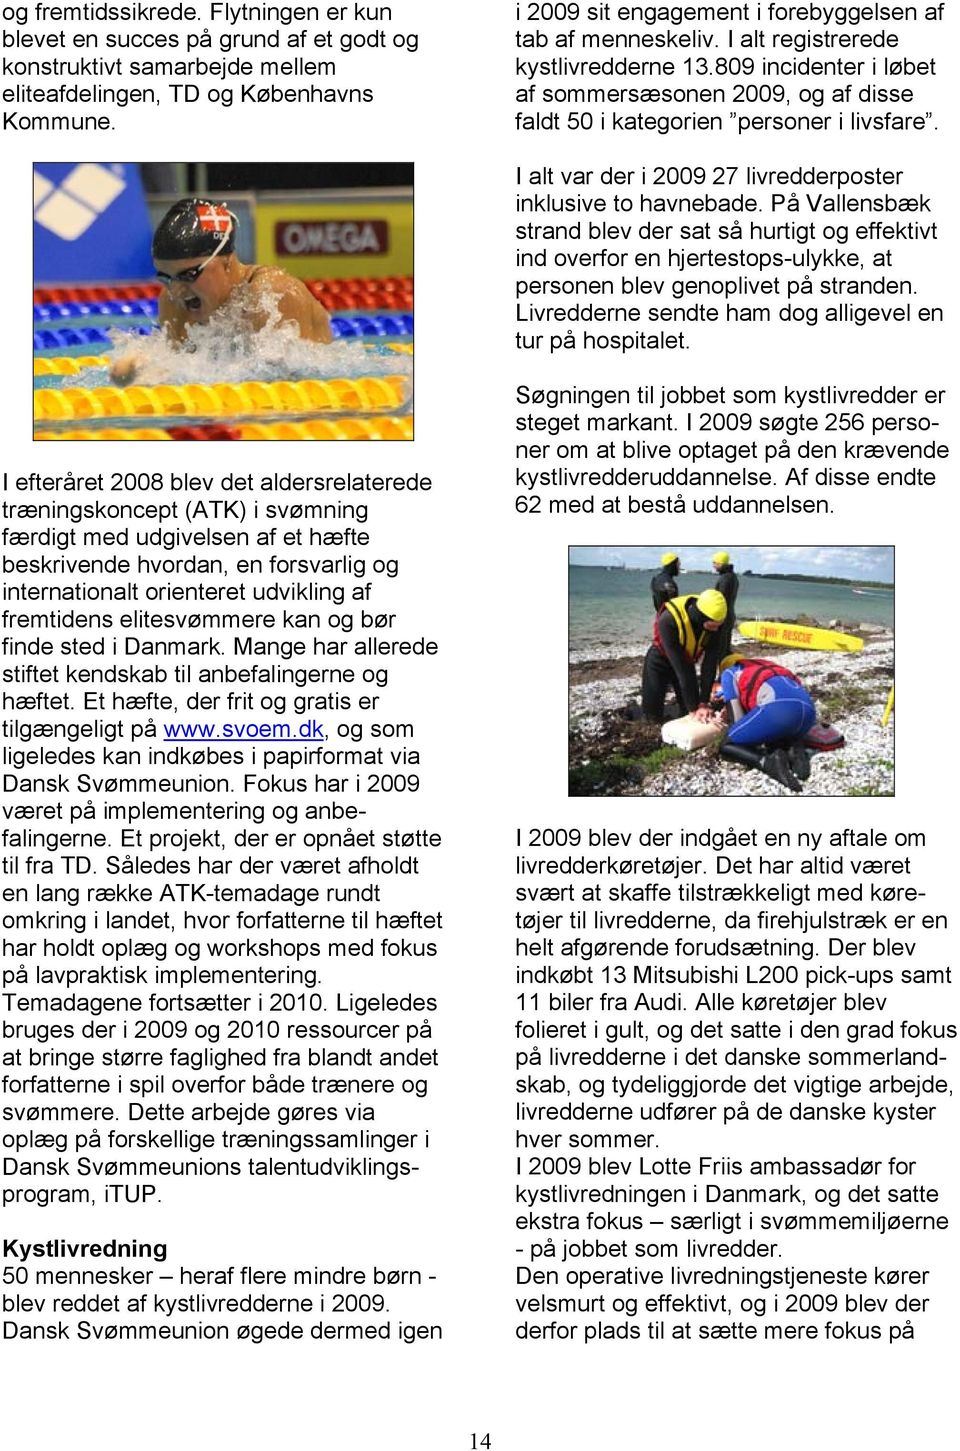 I alt var der i 2009 27 livredderposter inklusive to havnebade. På Vallensbæk strand blev der sat så hurtigt og effektivt ind overfor en hjertestops-ulykke, at personen blev genoplivet på stranden.